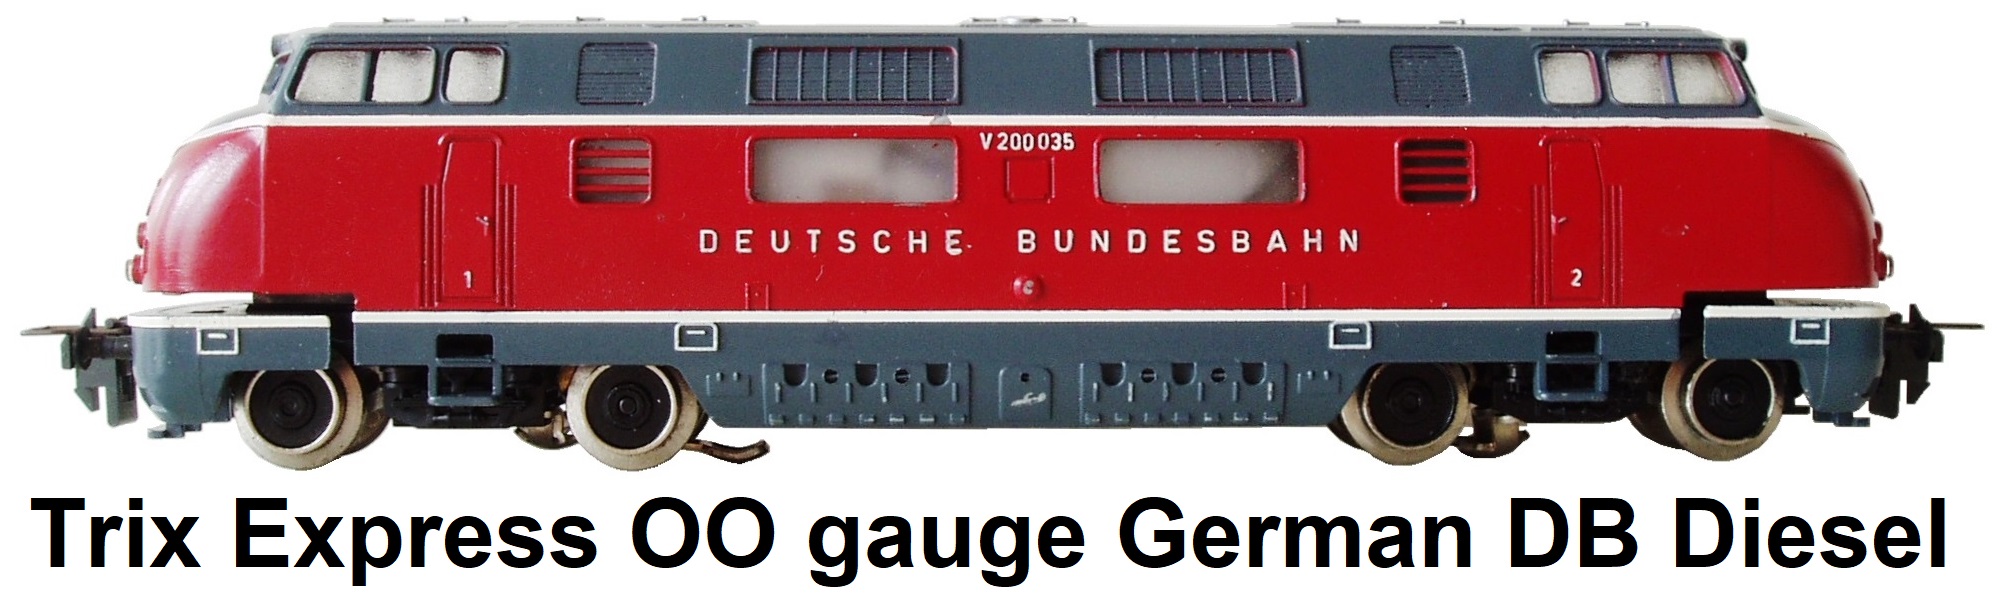 Trix Express OO gauge German DB Diesel